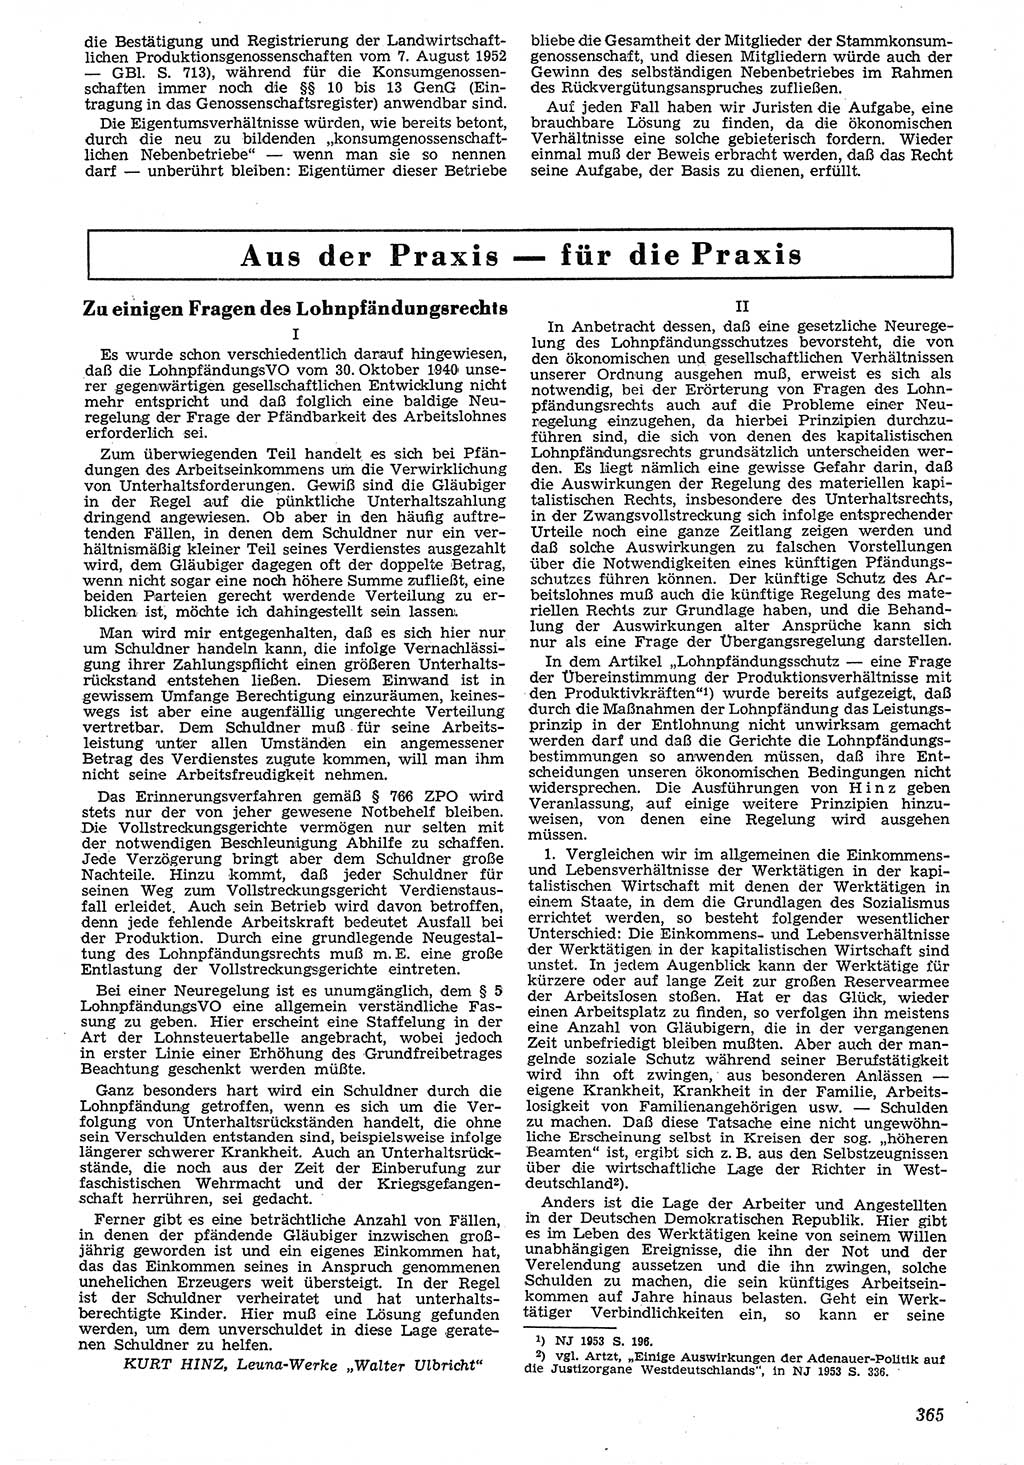 Neue Justiz (NJ), Zeitschrift für Recht und Rechtswissenschaft [Deutsche Demokratische Republik (DDR)], 7. Jahrgang 1953, Seite 365 (NJ DDR 1953, S. 365)